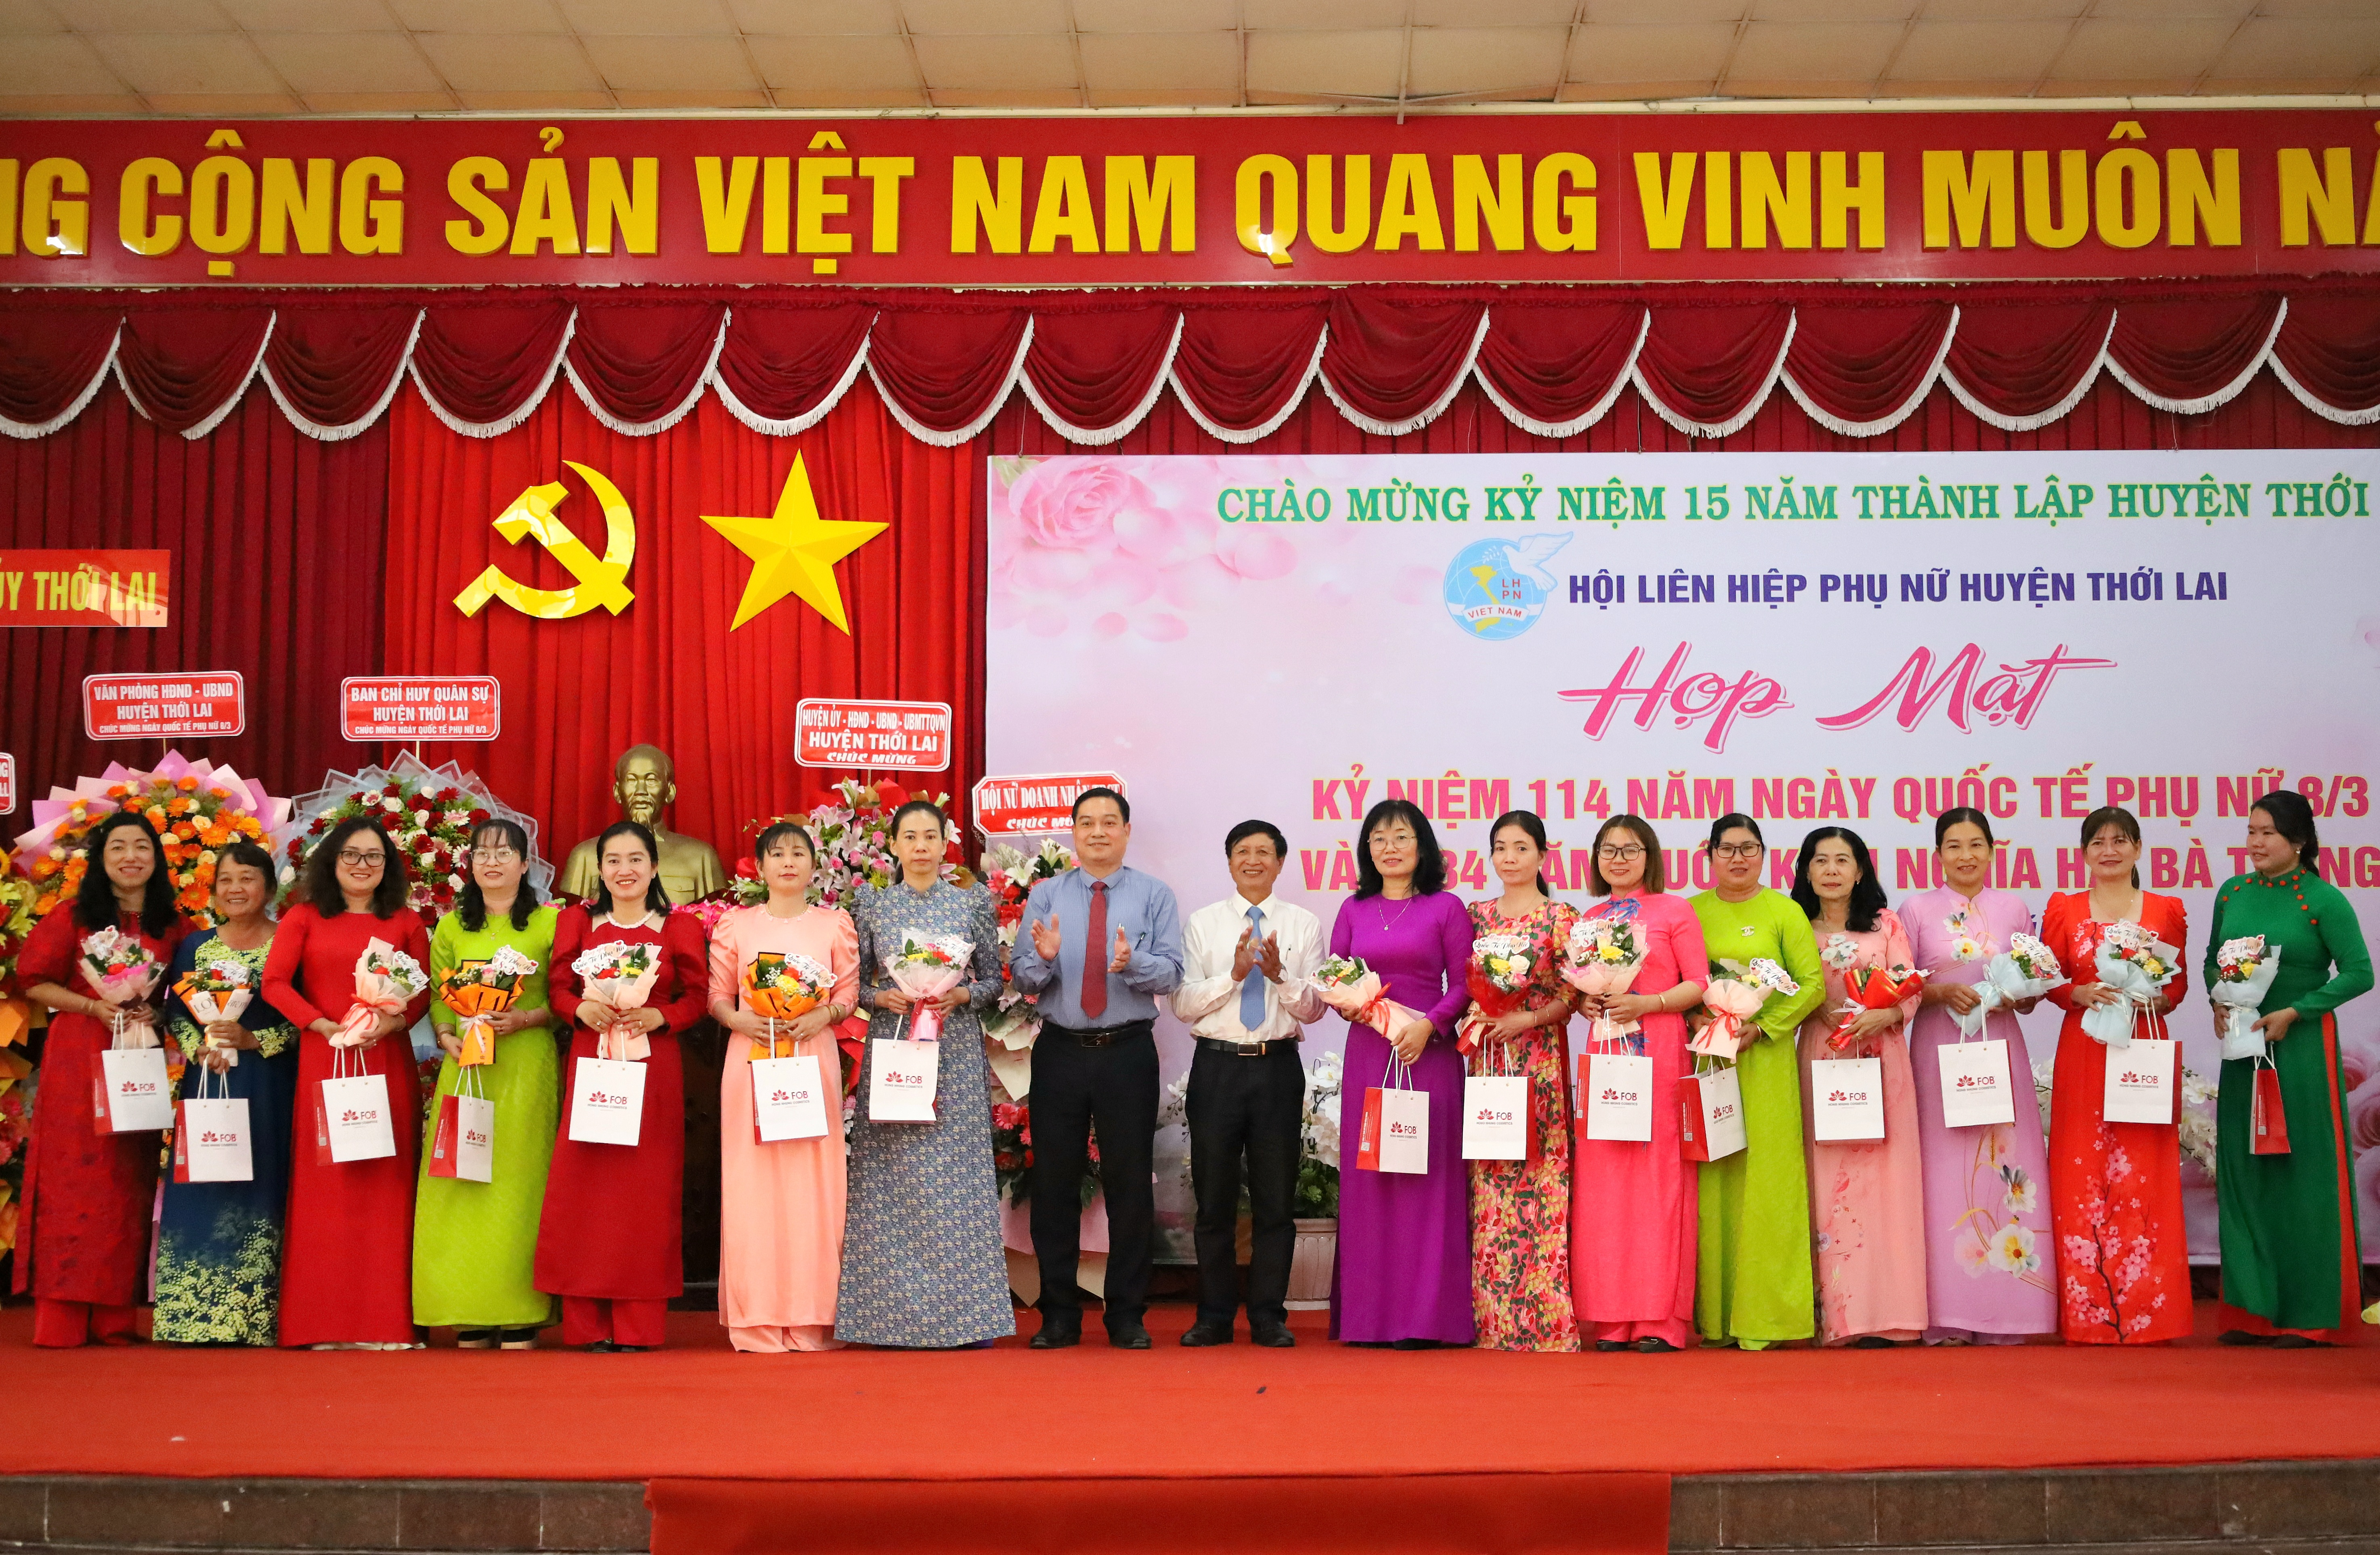 Ông Nguyễn Bá Hùng - Trưởng Ban tuyên giáo, Giám đốc Trung tâm Chính trị huyện Thới Lai và ông Nguyễn Văn Bỉ - Chủ nhiệm Ủy ban kiểm tra Huyện ủy Thới Lai.